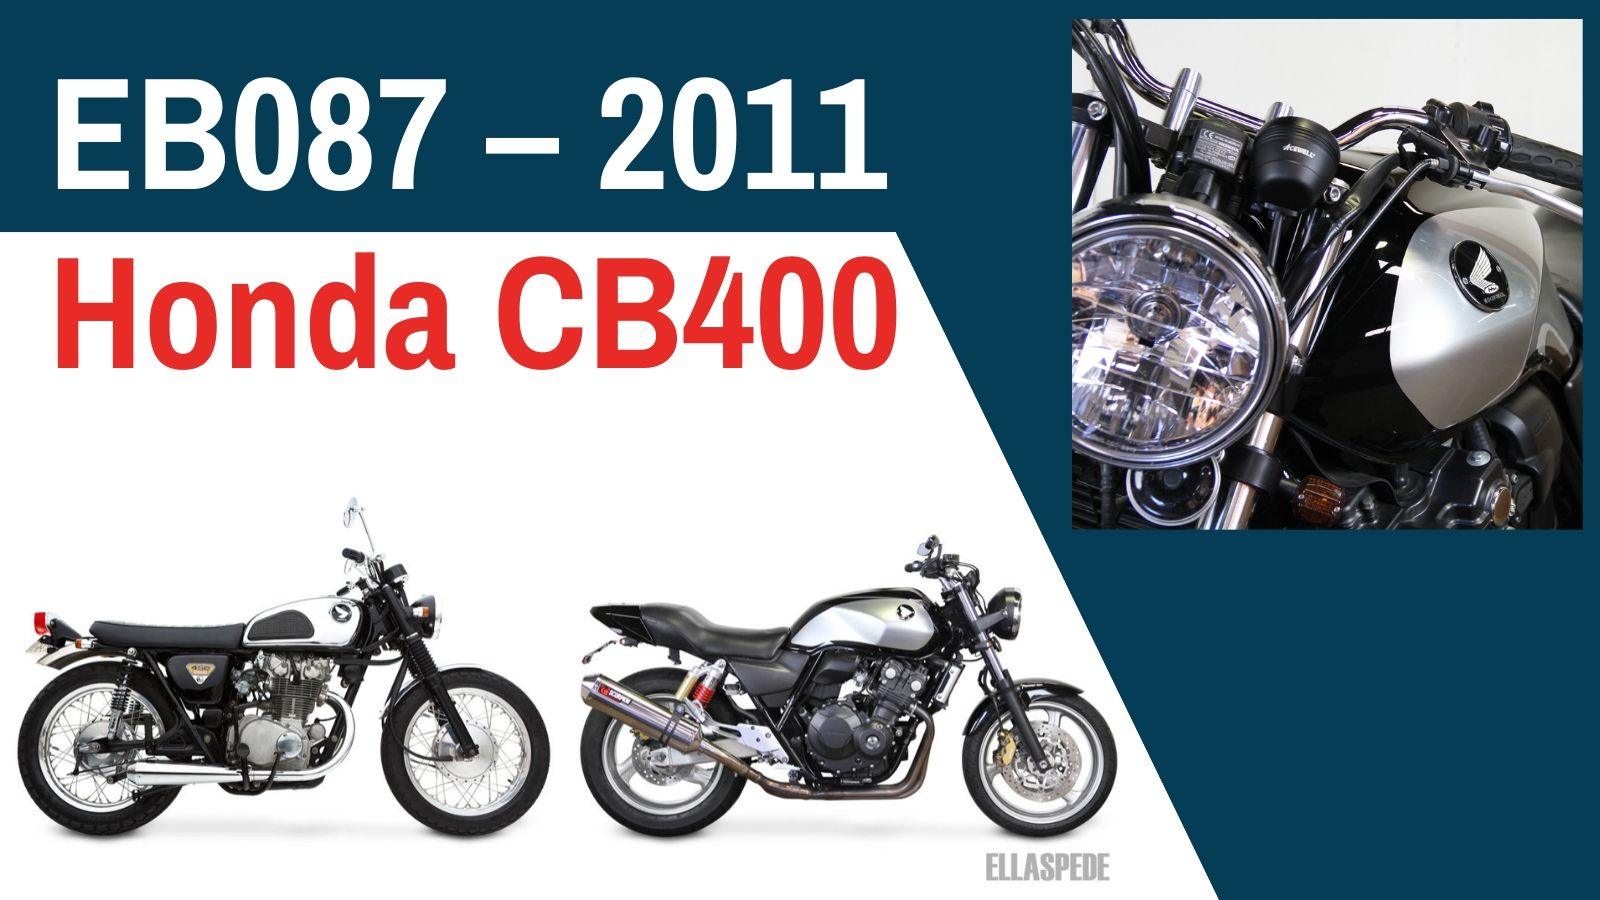 EB087 – 2011 Honda CB400 kapak